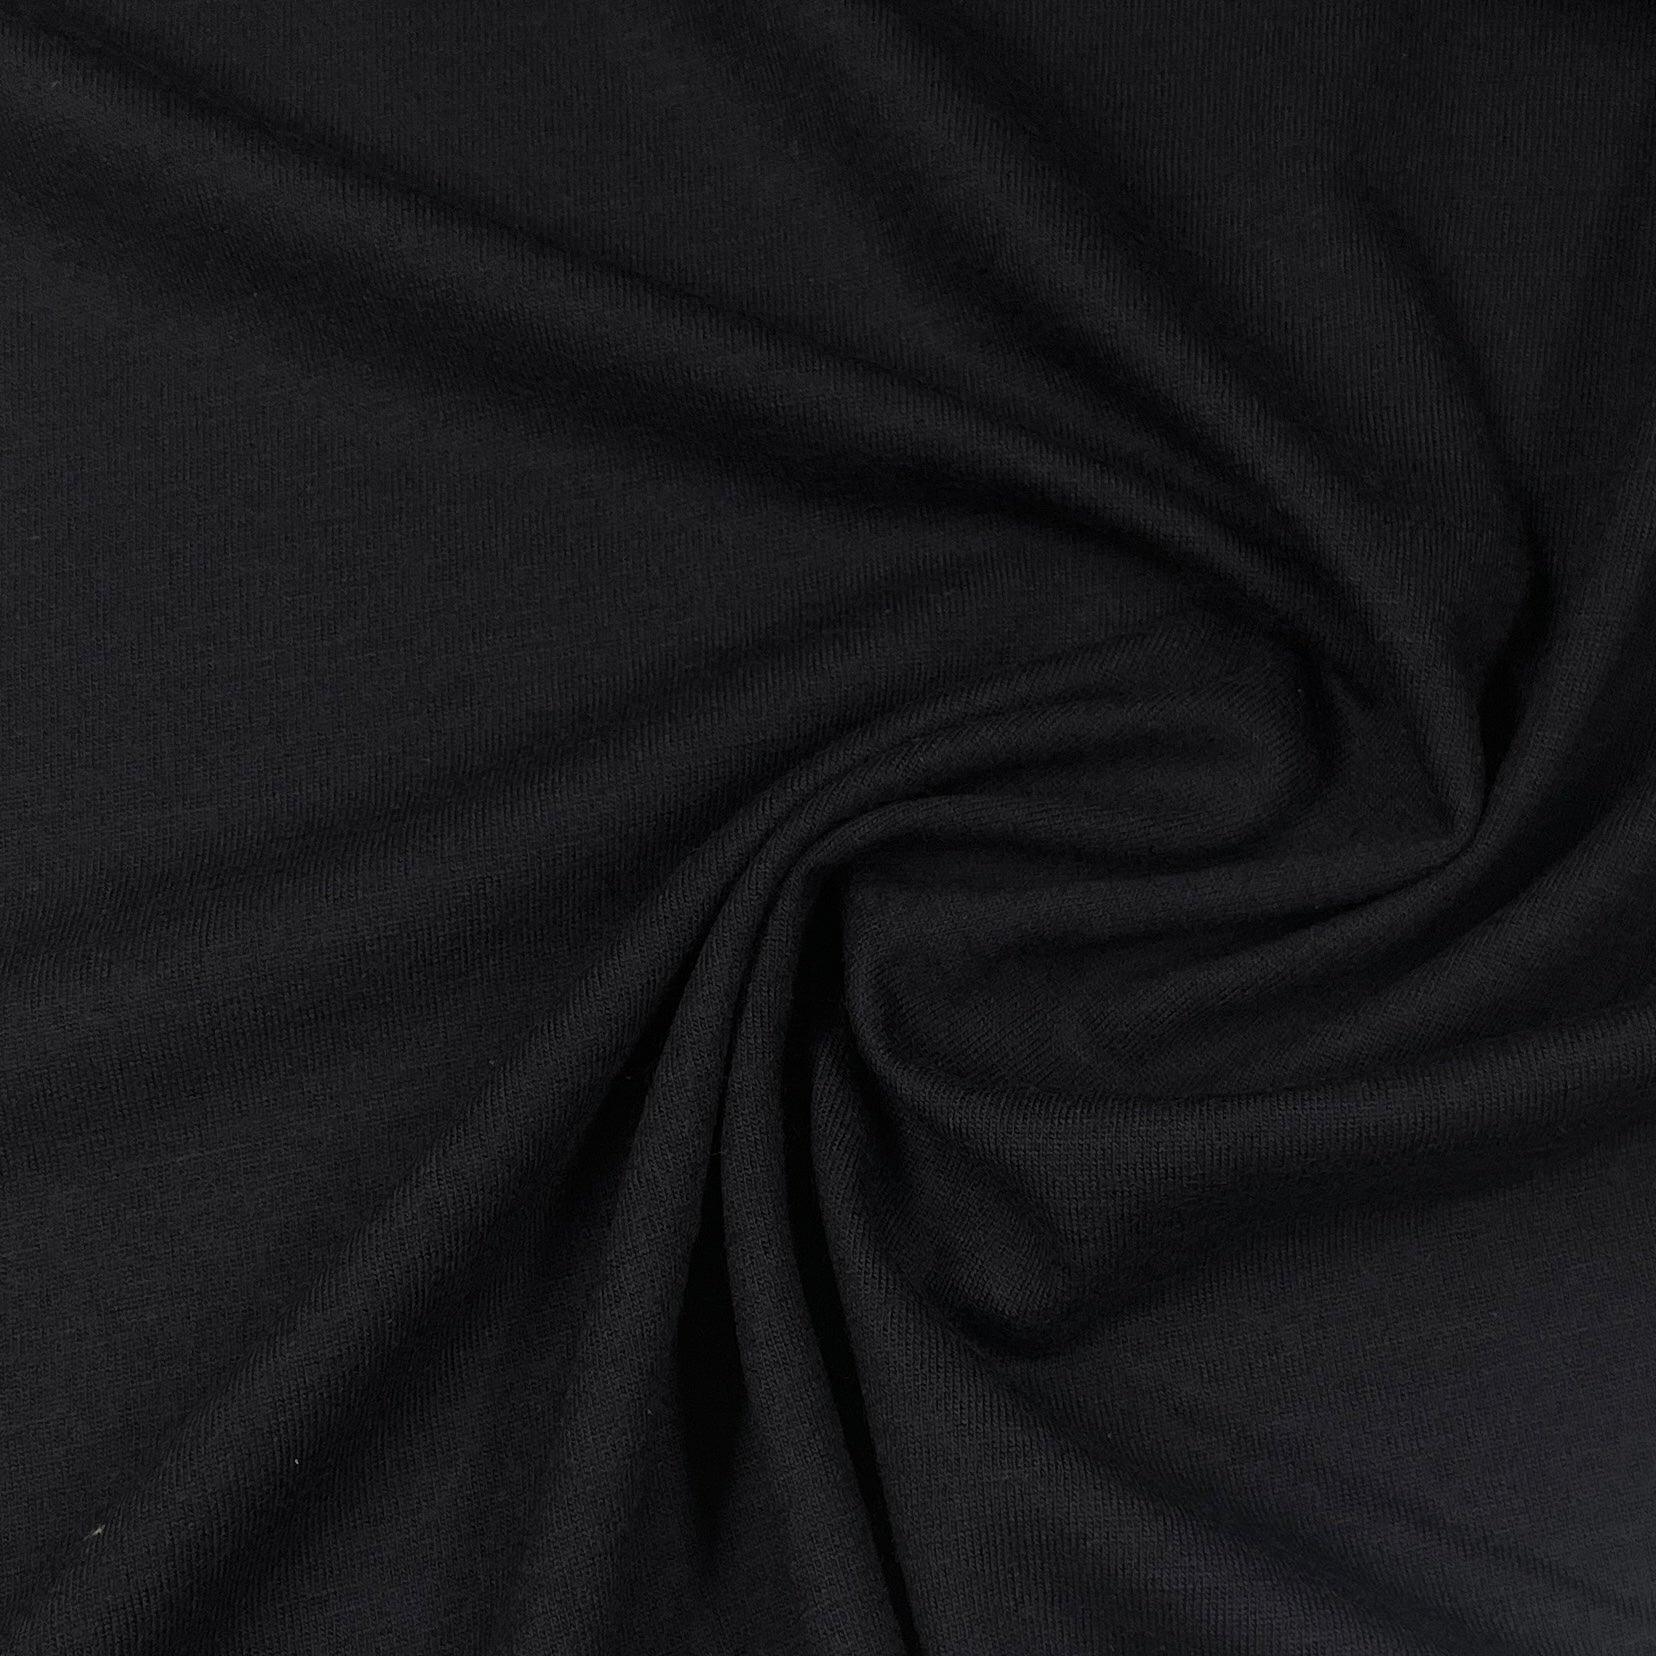 Midnight 100% Merino Wool Jersey Fabric - Nature's Fabrics